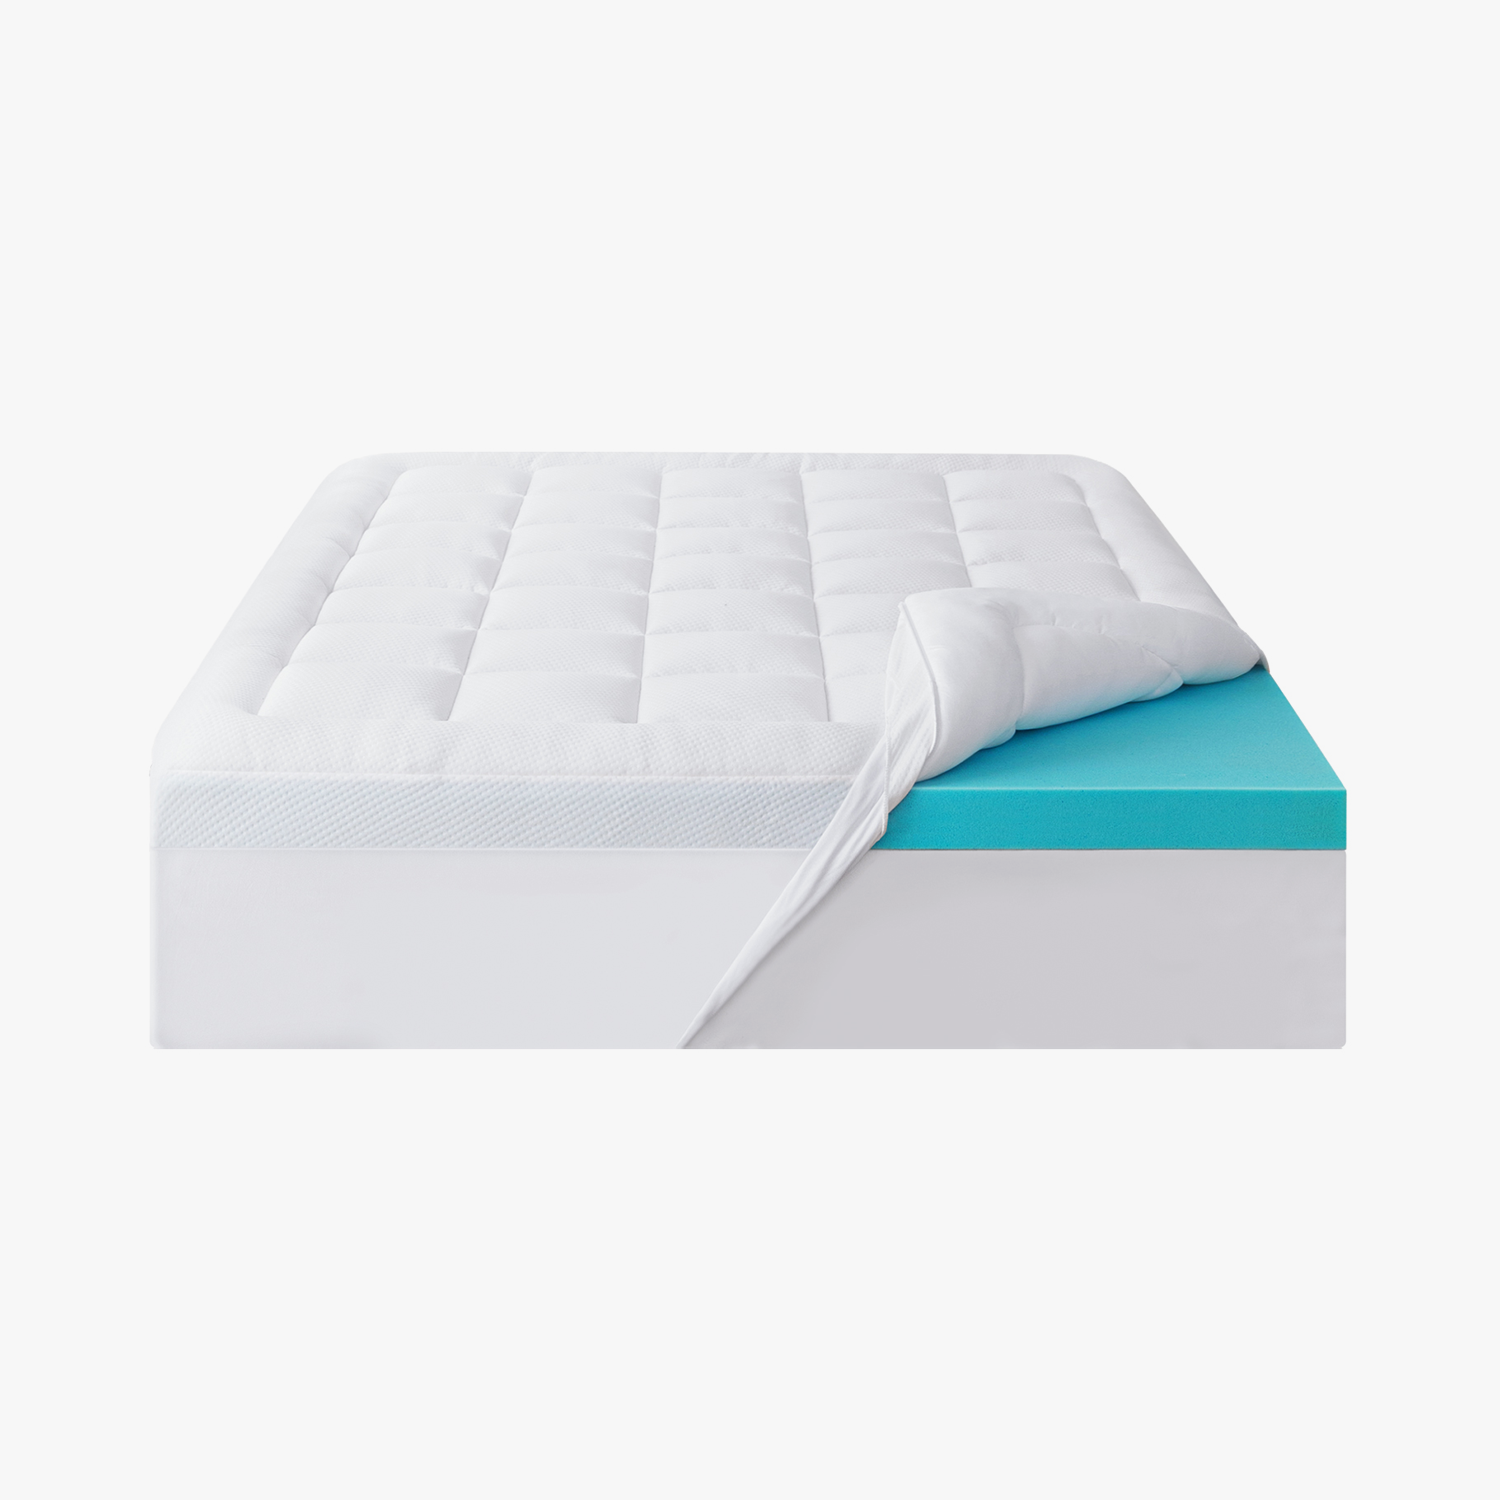 Serta 4' Pillow-Top and Memory Foam Mattress Topper - Queen